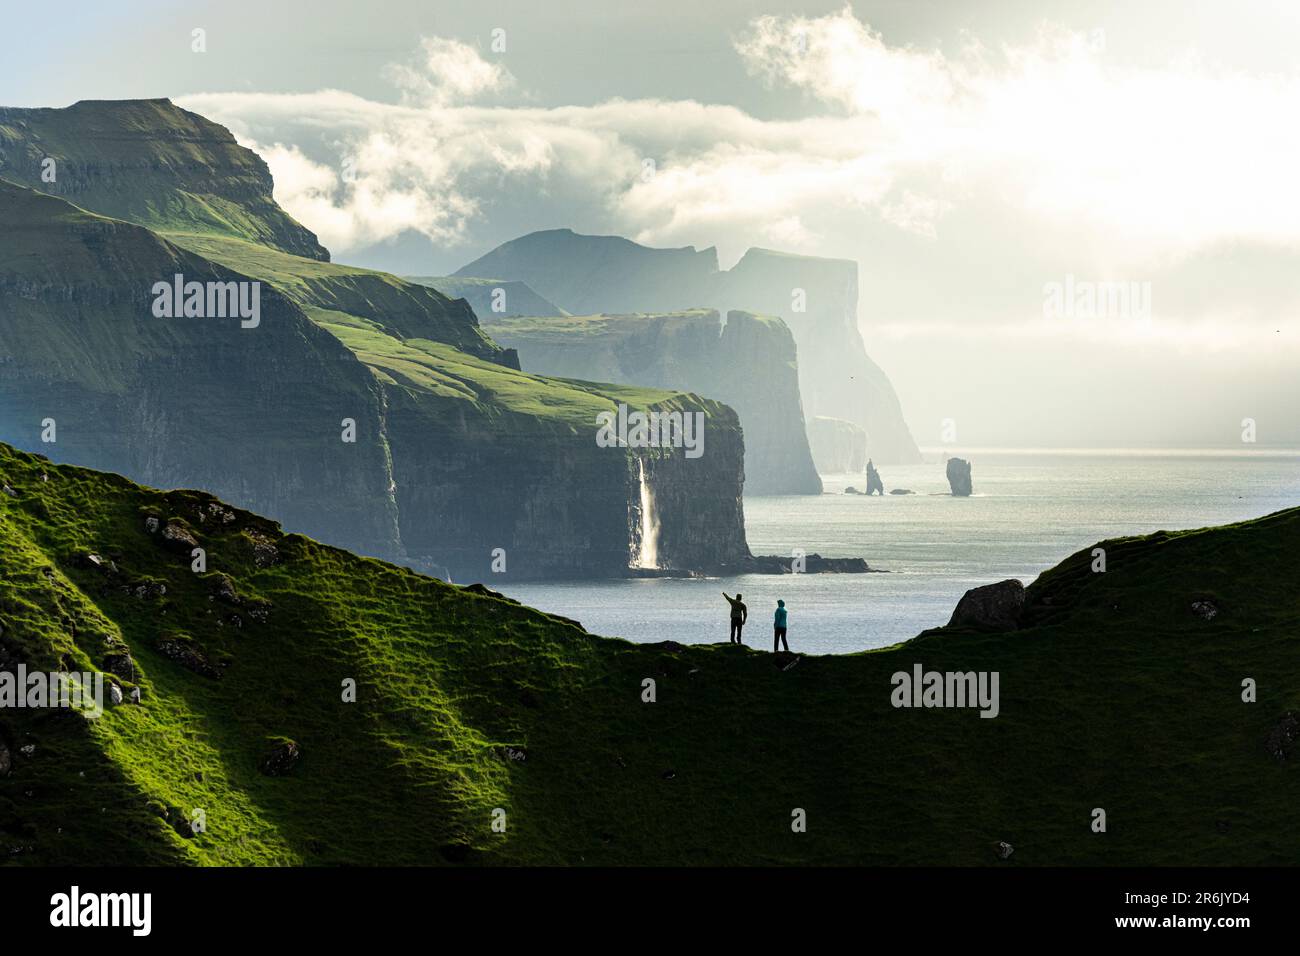 Silhouette di escursionisti che ammirano le scogliere in cima alla cresta di montagna sopra l'oceano, l'isola di Kalsoy, le isole Faroe, la Danimarca, l'Europa Foto Stock